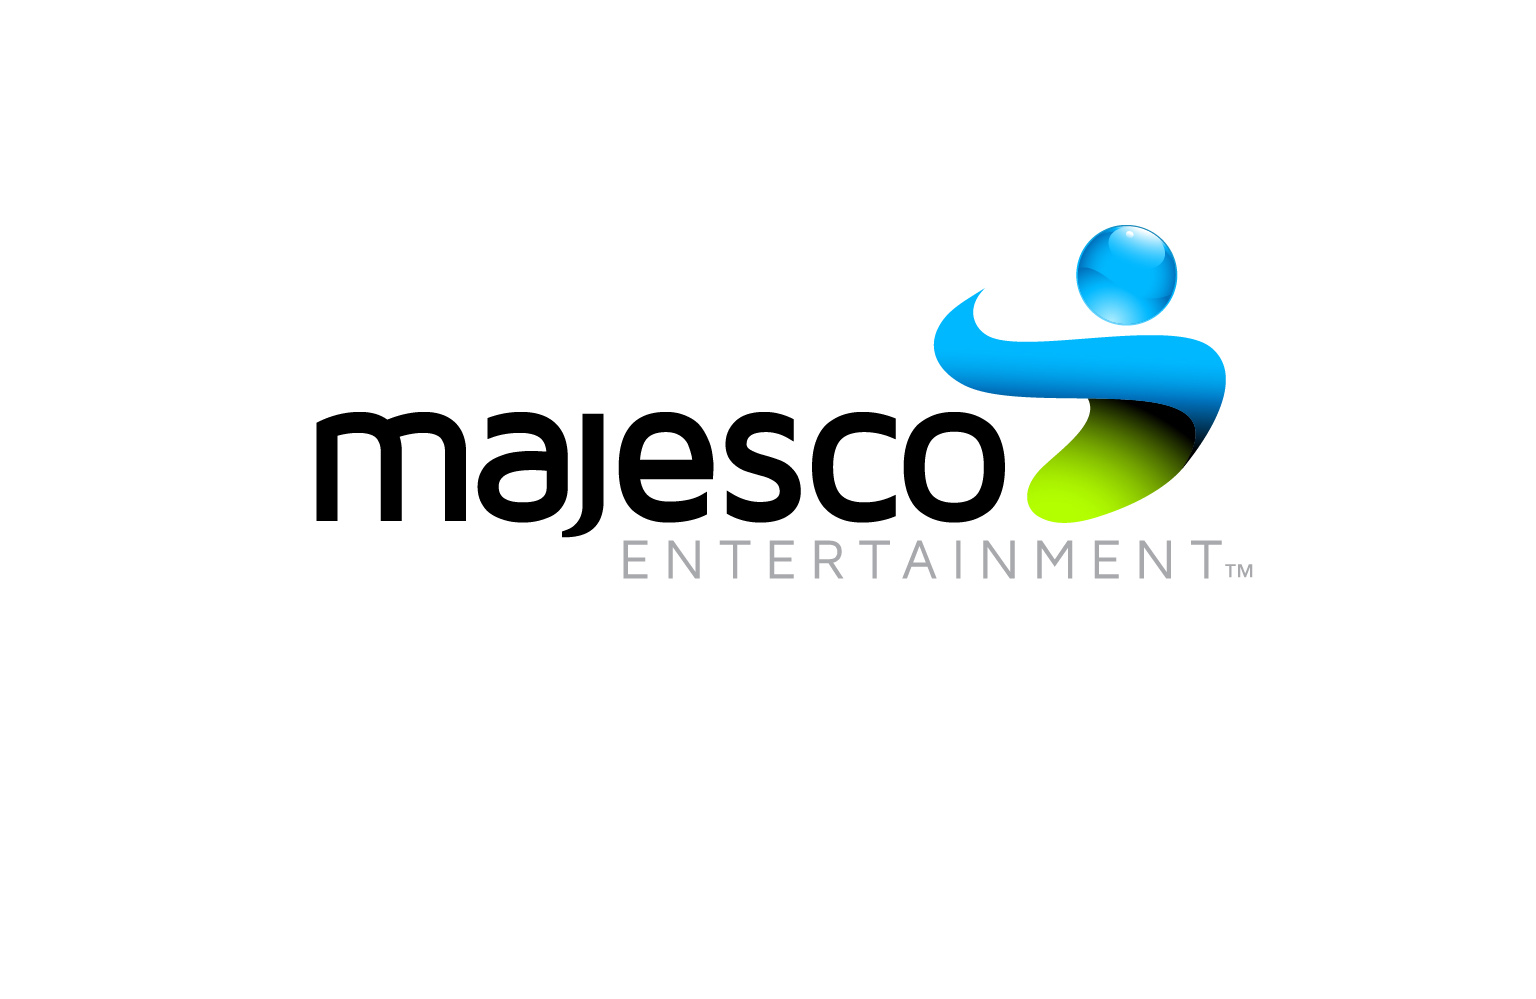 Majesco Entertainment annonces E3 2013 line up with distribution partner Little Orbit